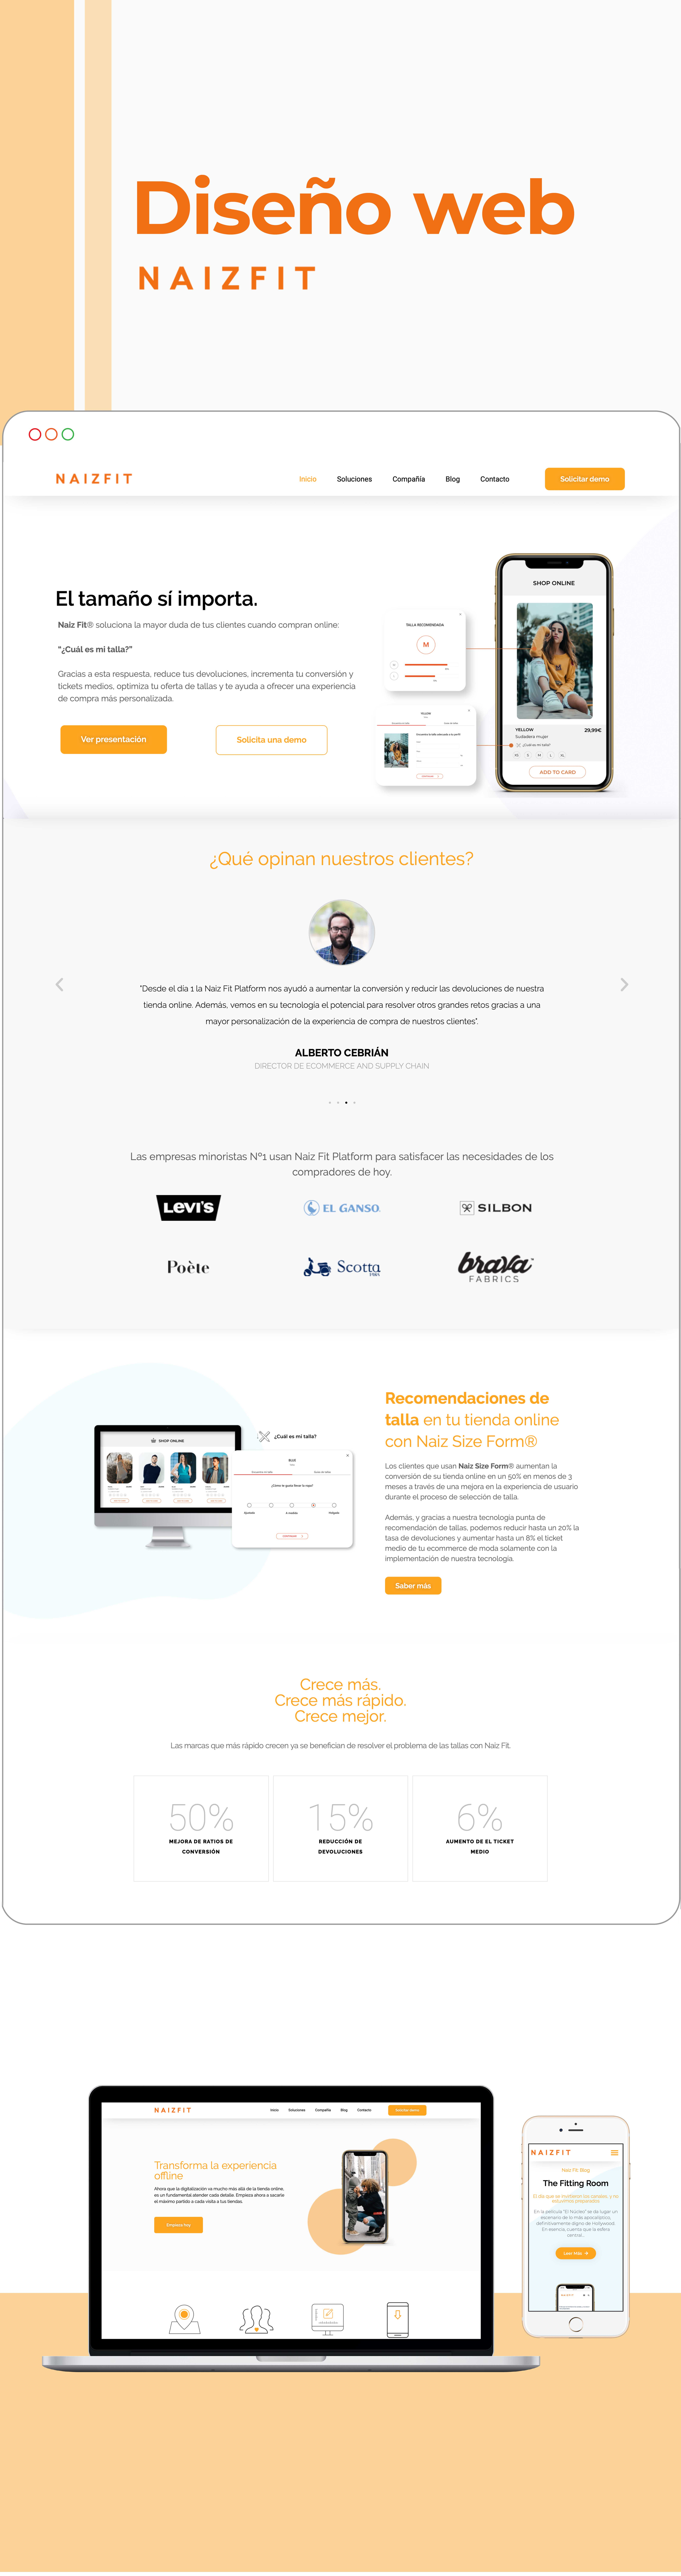 Diseño Web para Naiz Fit - Création de site internet